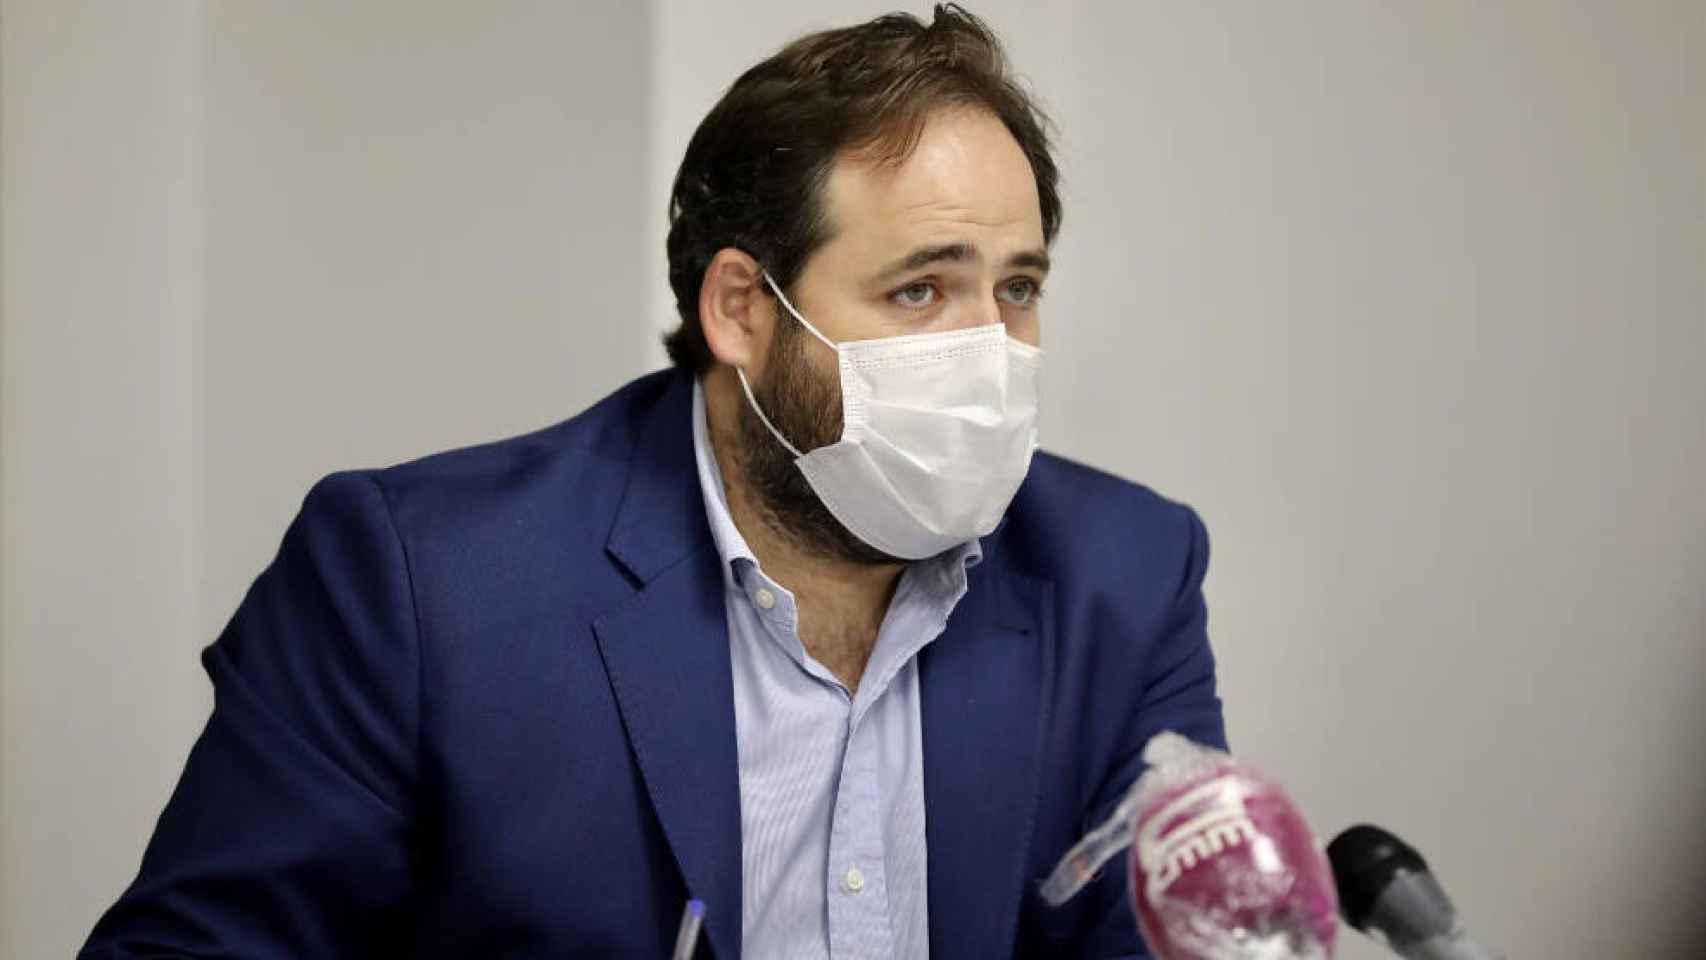 El presidente del PP de Castilla-La Mancha, Paco Núñez